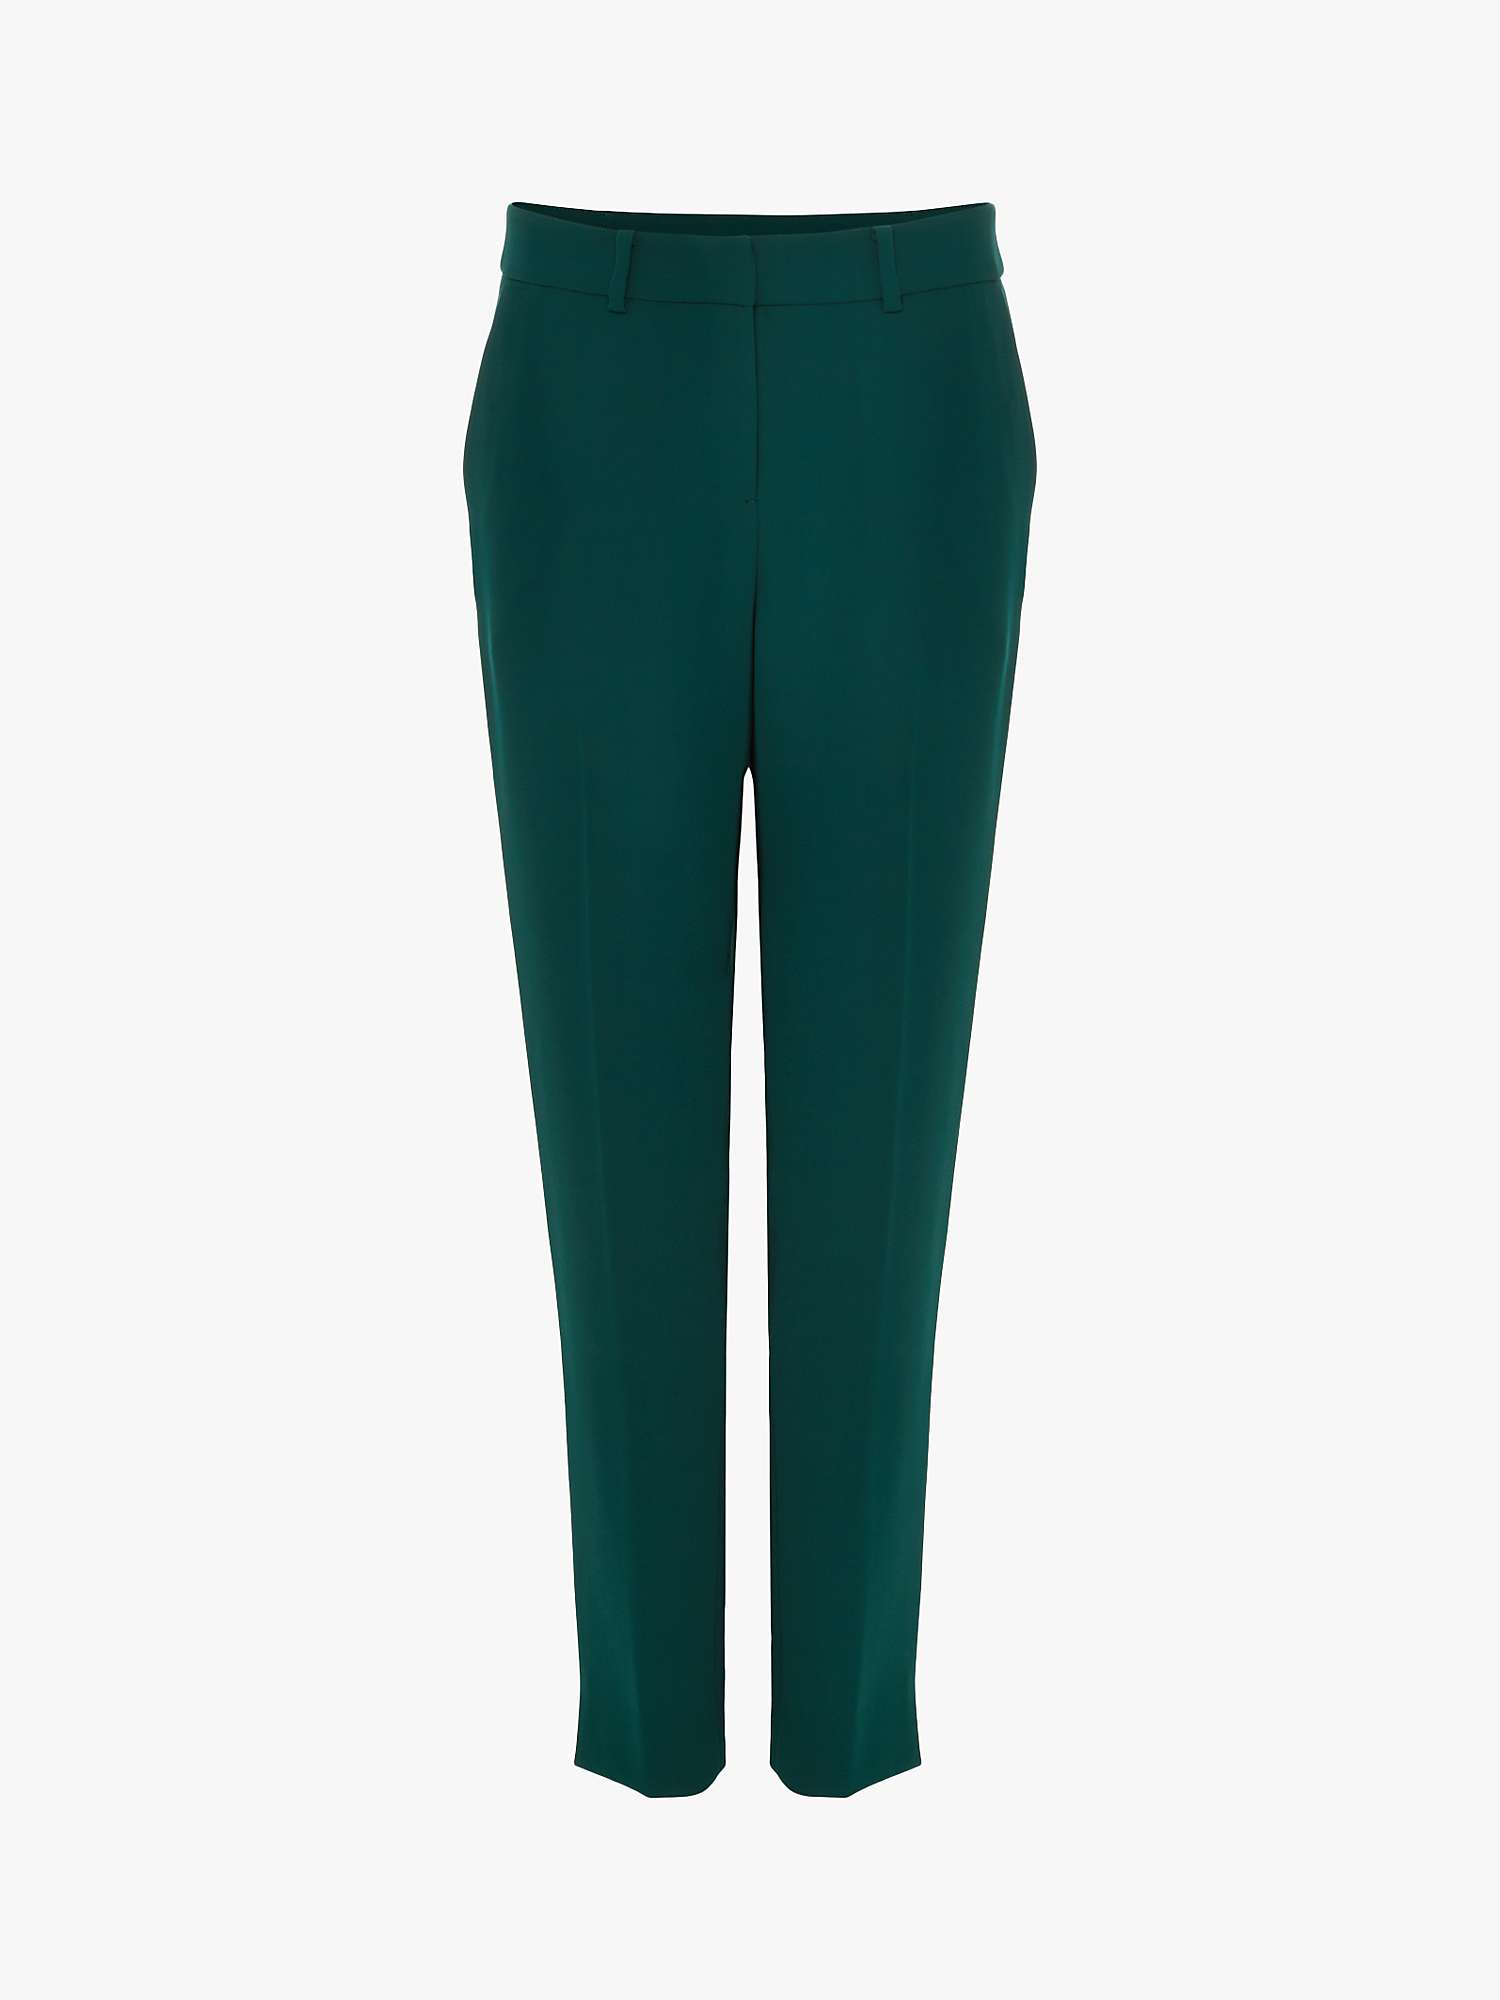 Buy Hobbs Petite Adelia Slim Trousers, Leaf Green Online at johnlewis.com